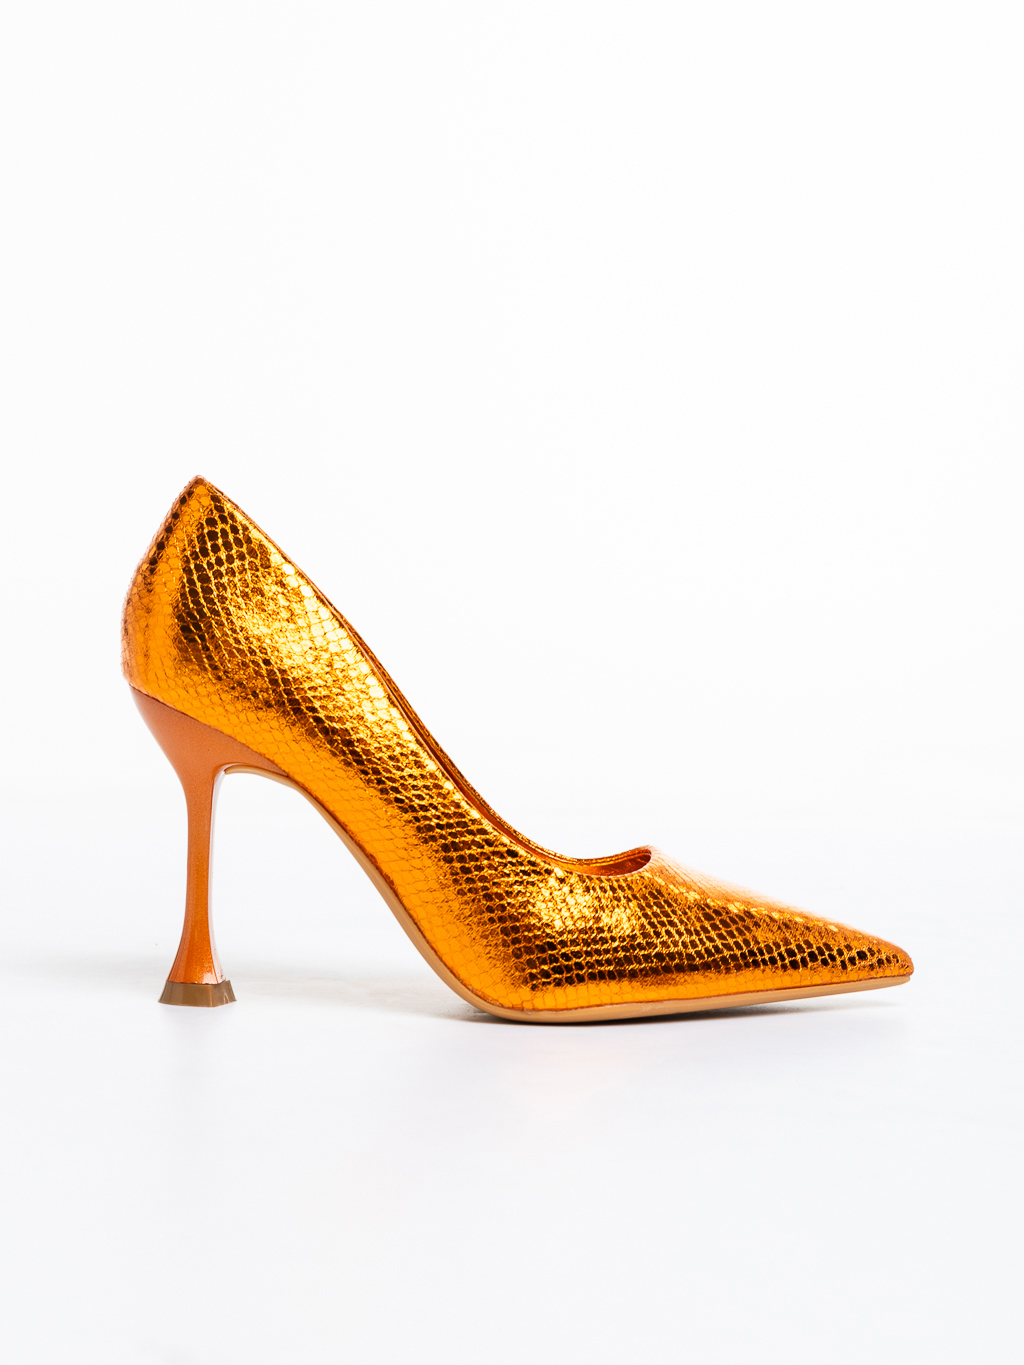 Pantofi dama portocalii cu toc din piele ecologica lacuita Emalyn, 5 - Kalapod.net